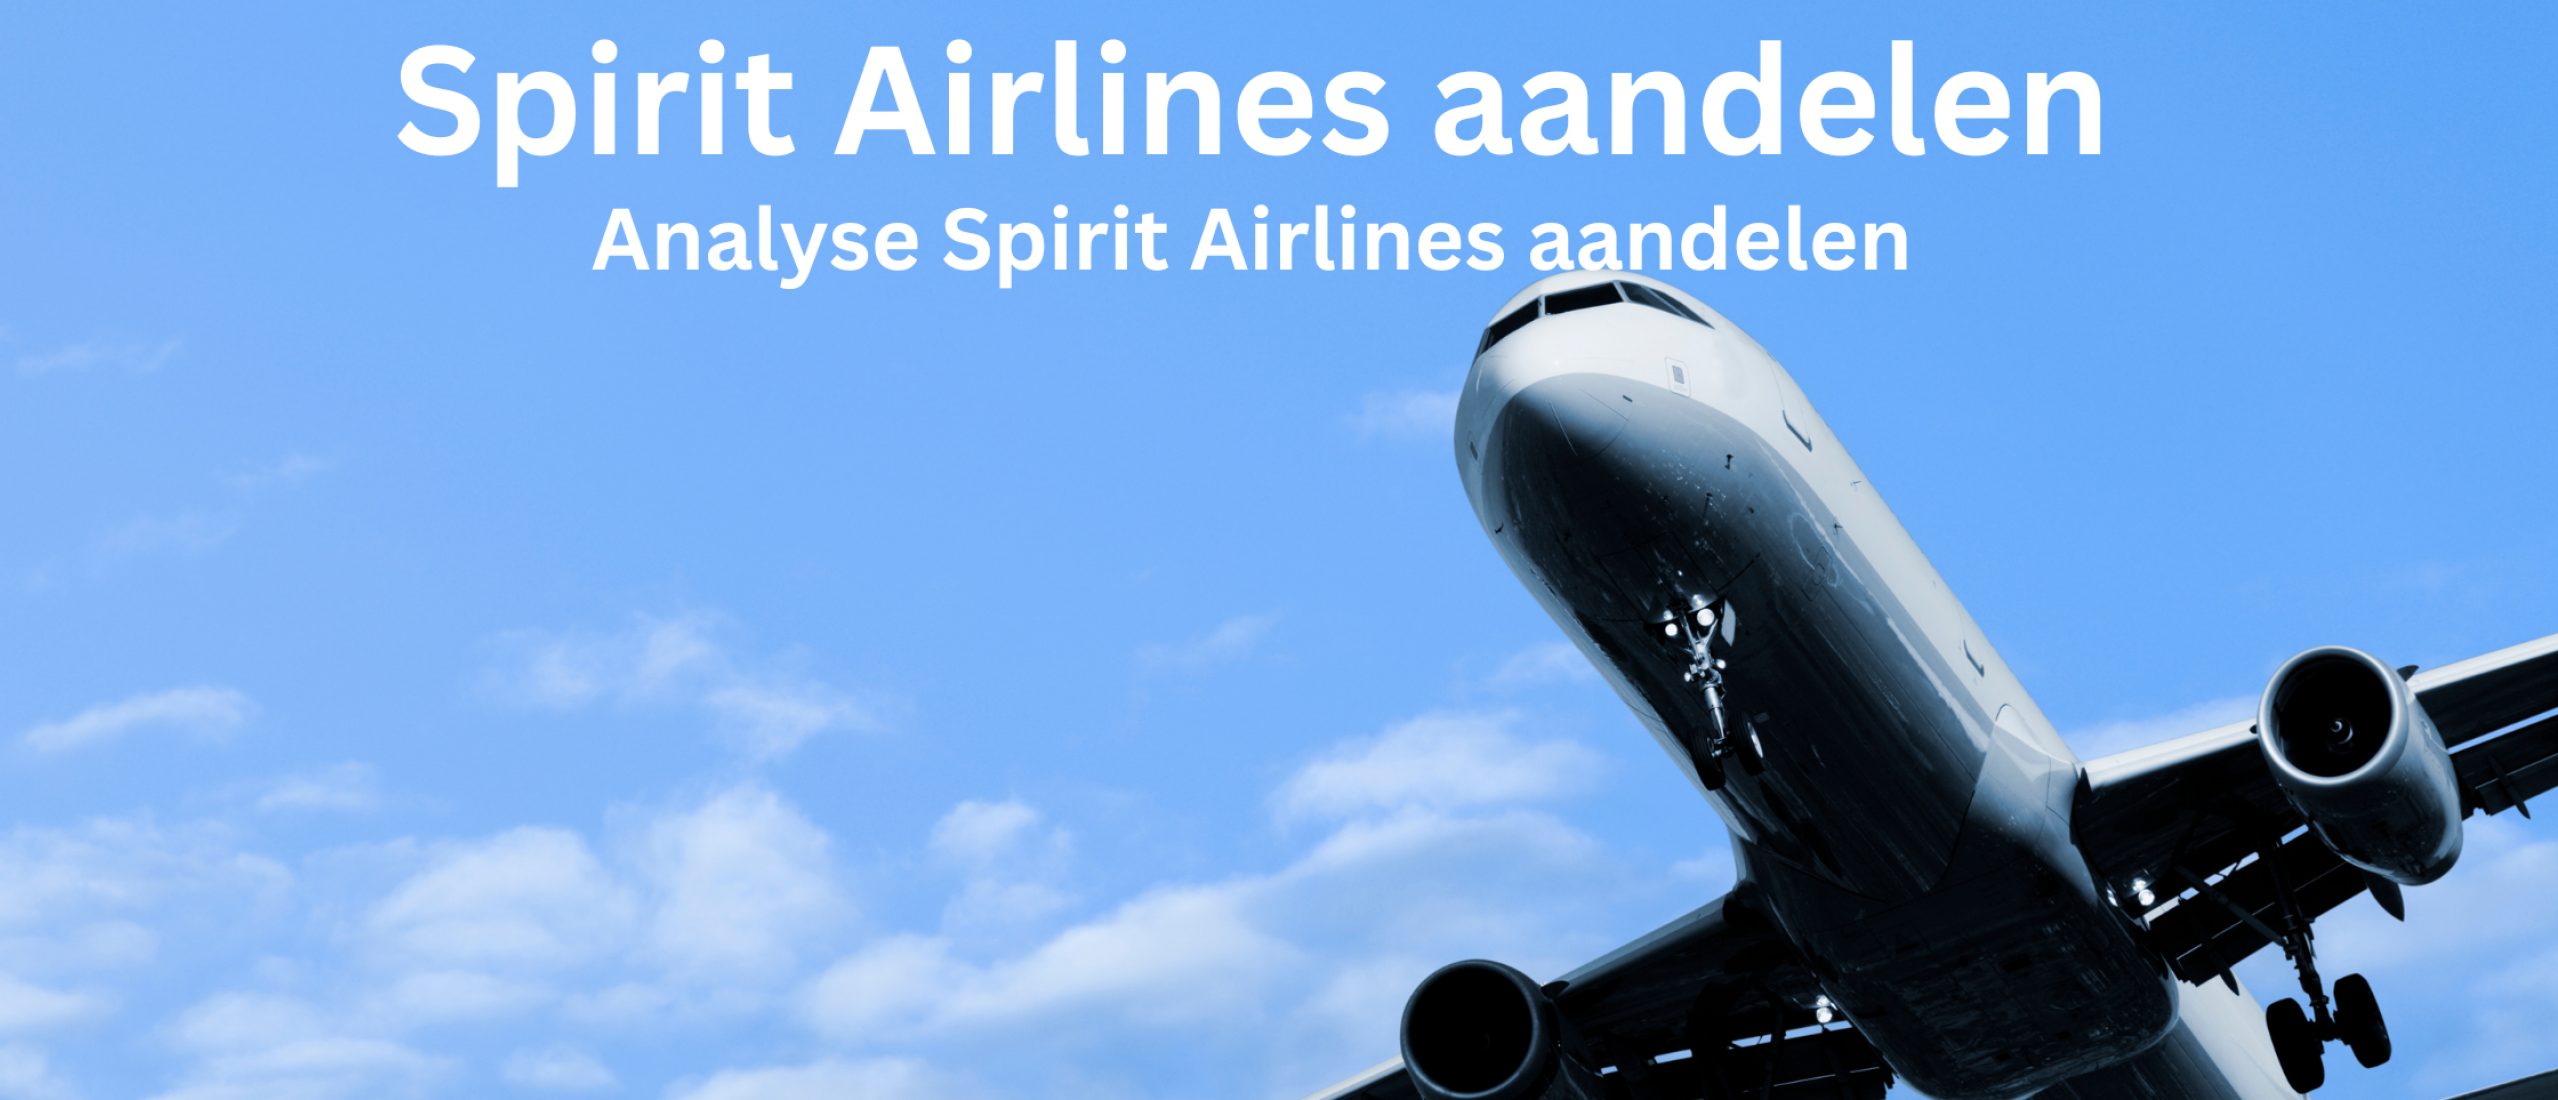 spirit-airlines-groeiaandelen-kopen-